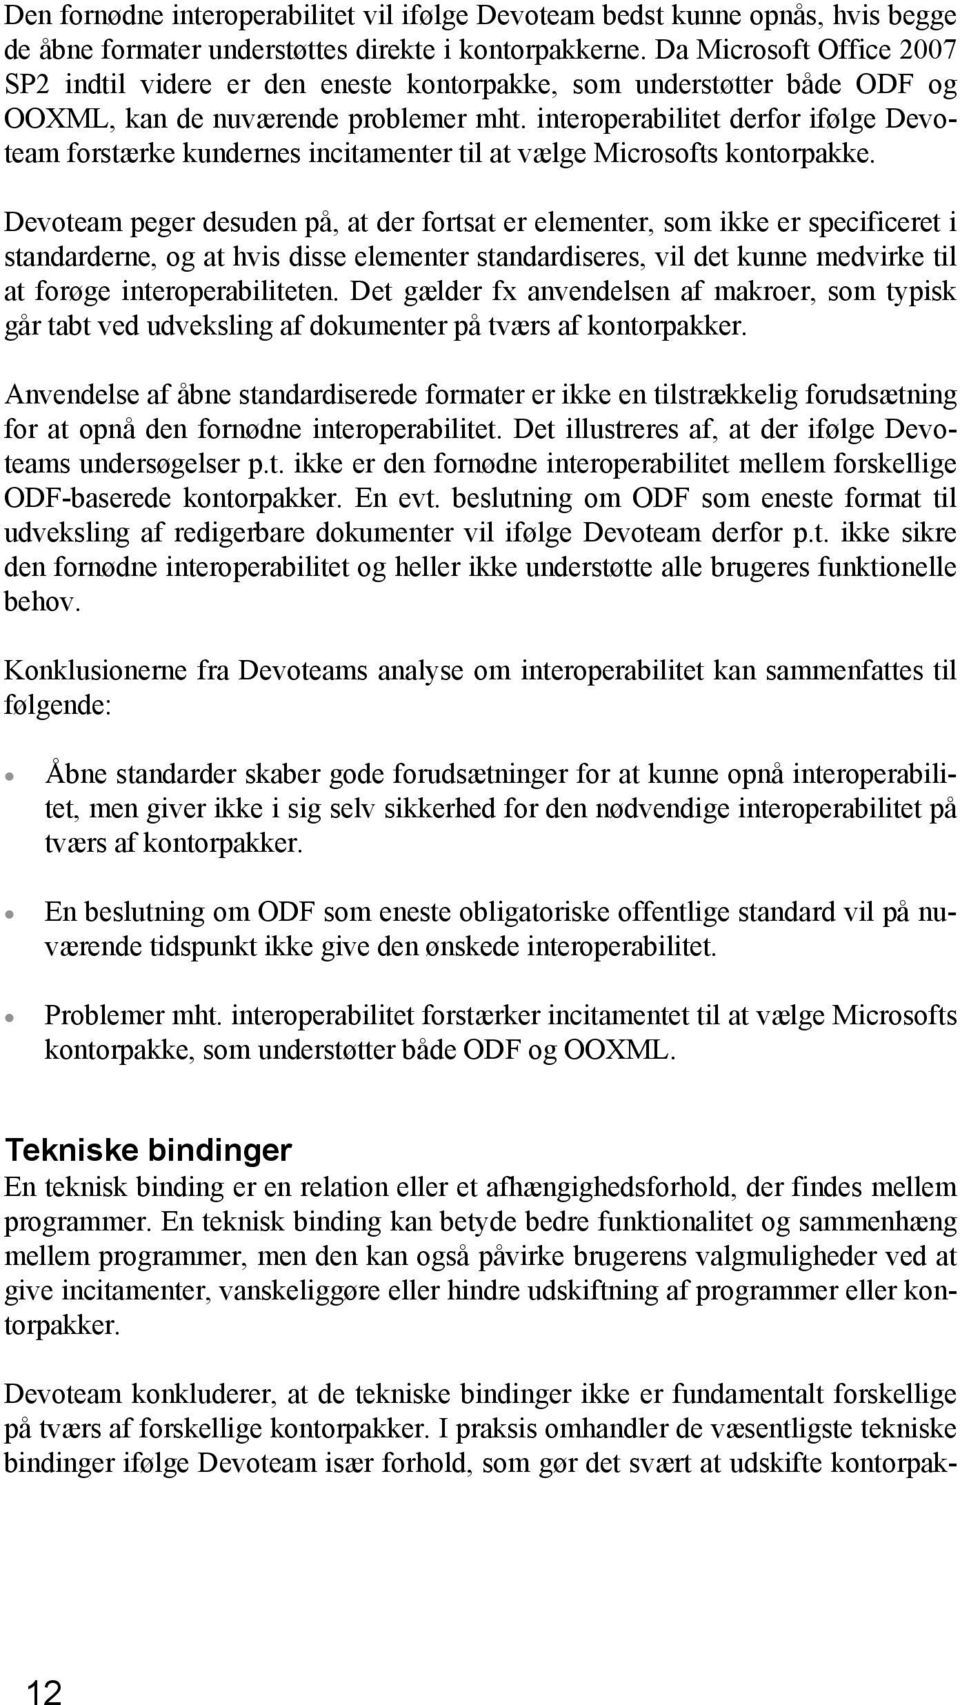 interoperabilitet derfor ifølge Devoteam forstærke kundernes incitamenter til at vælge Microsofts kontorpakke.